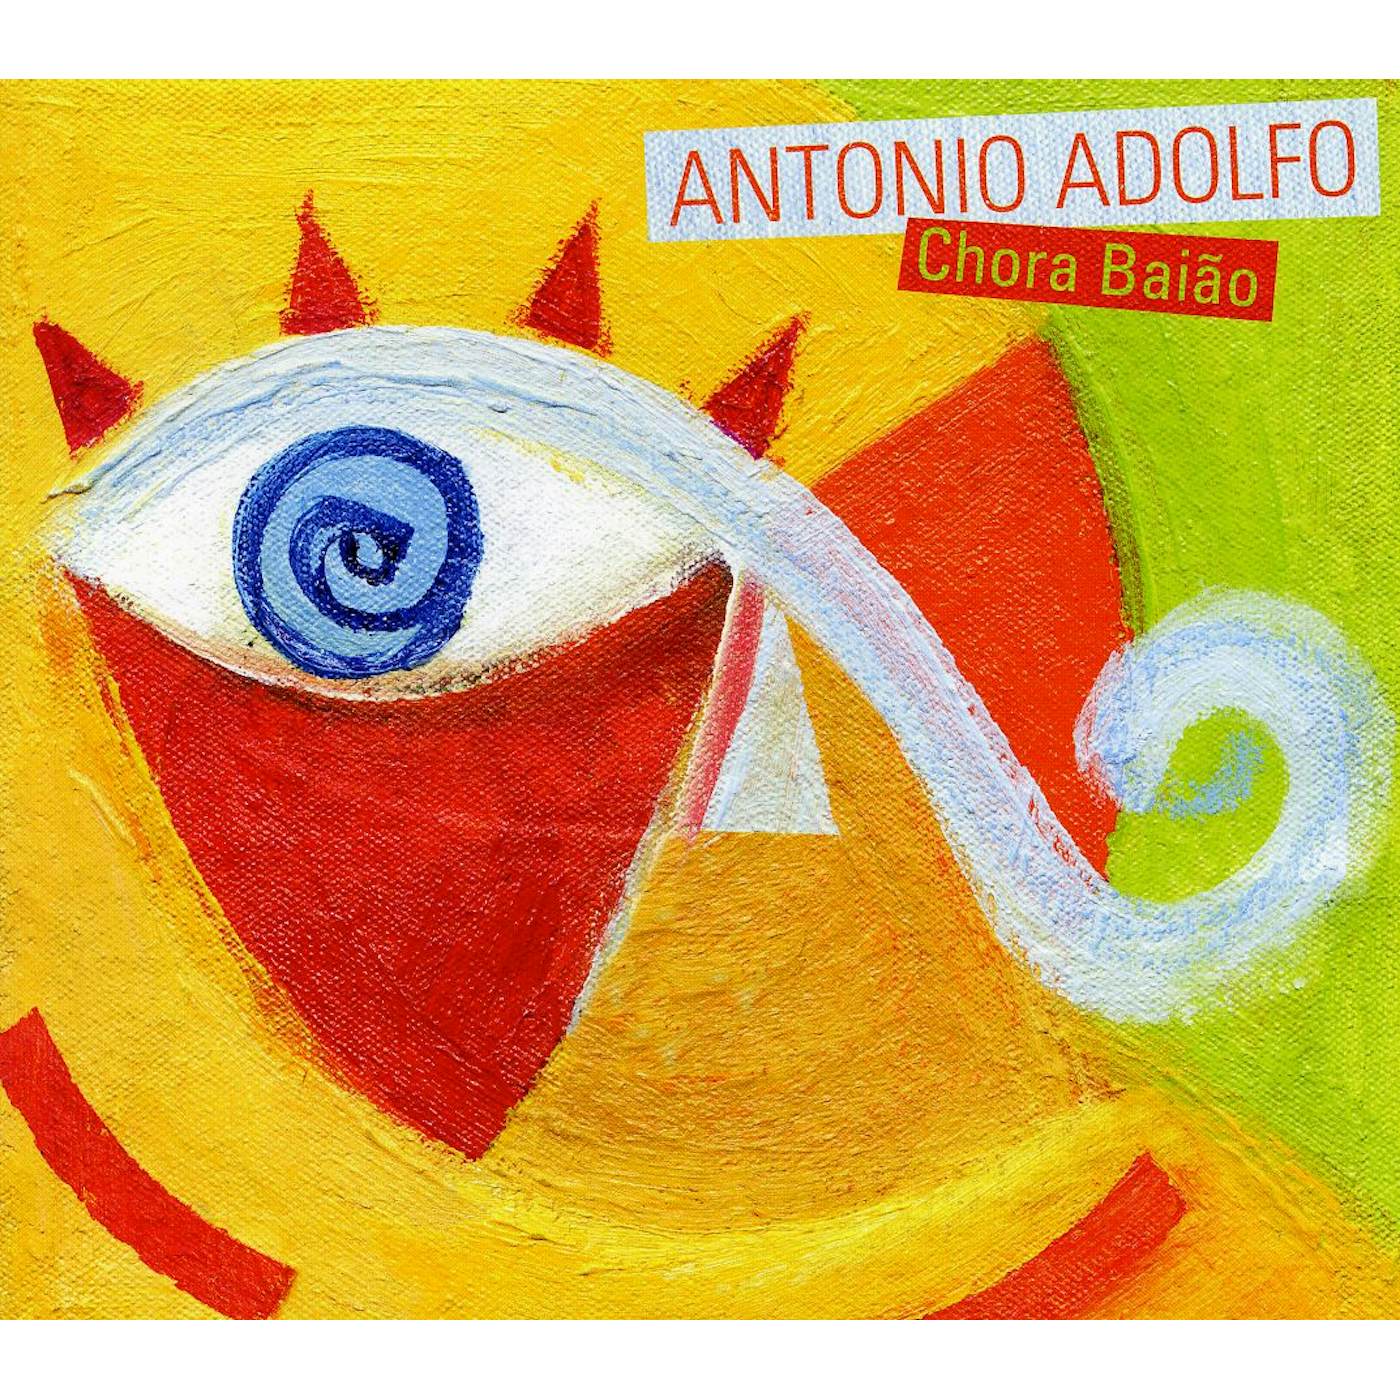 Antonio Adolfo CHORA BAIAO CD